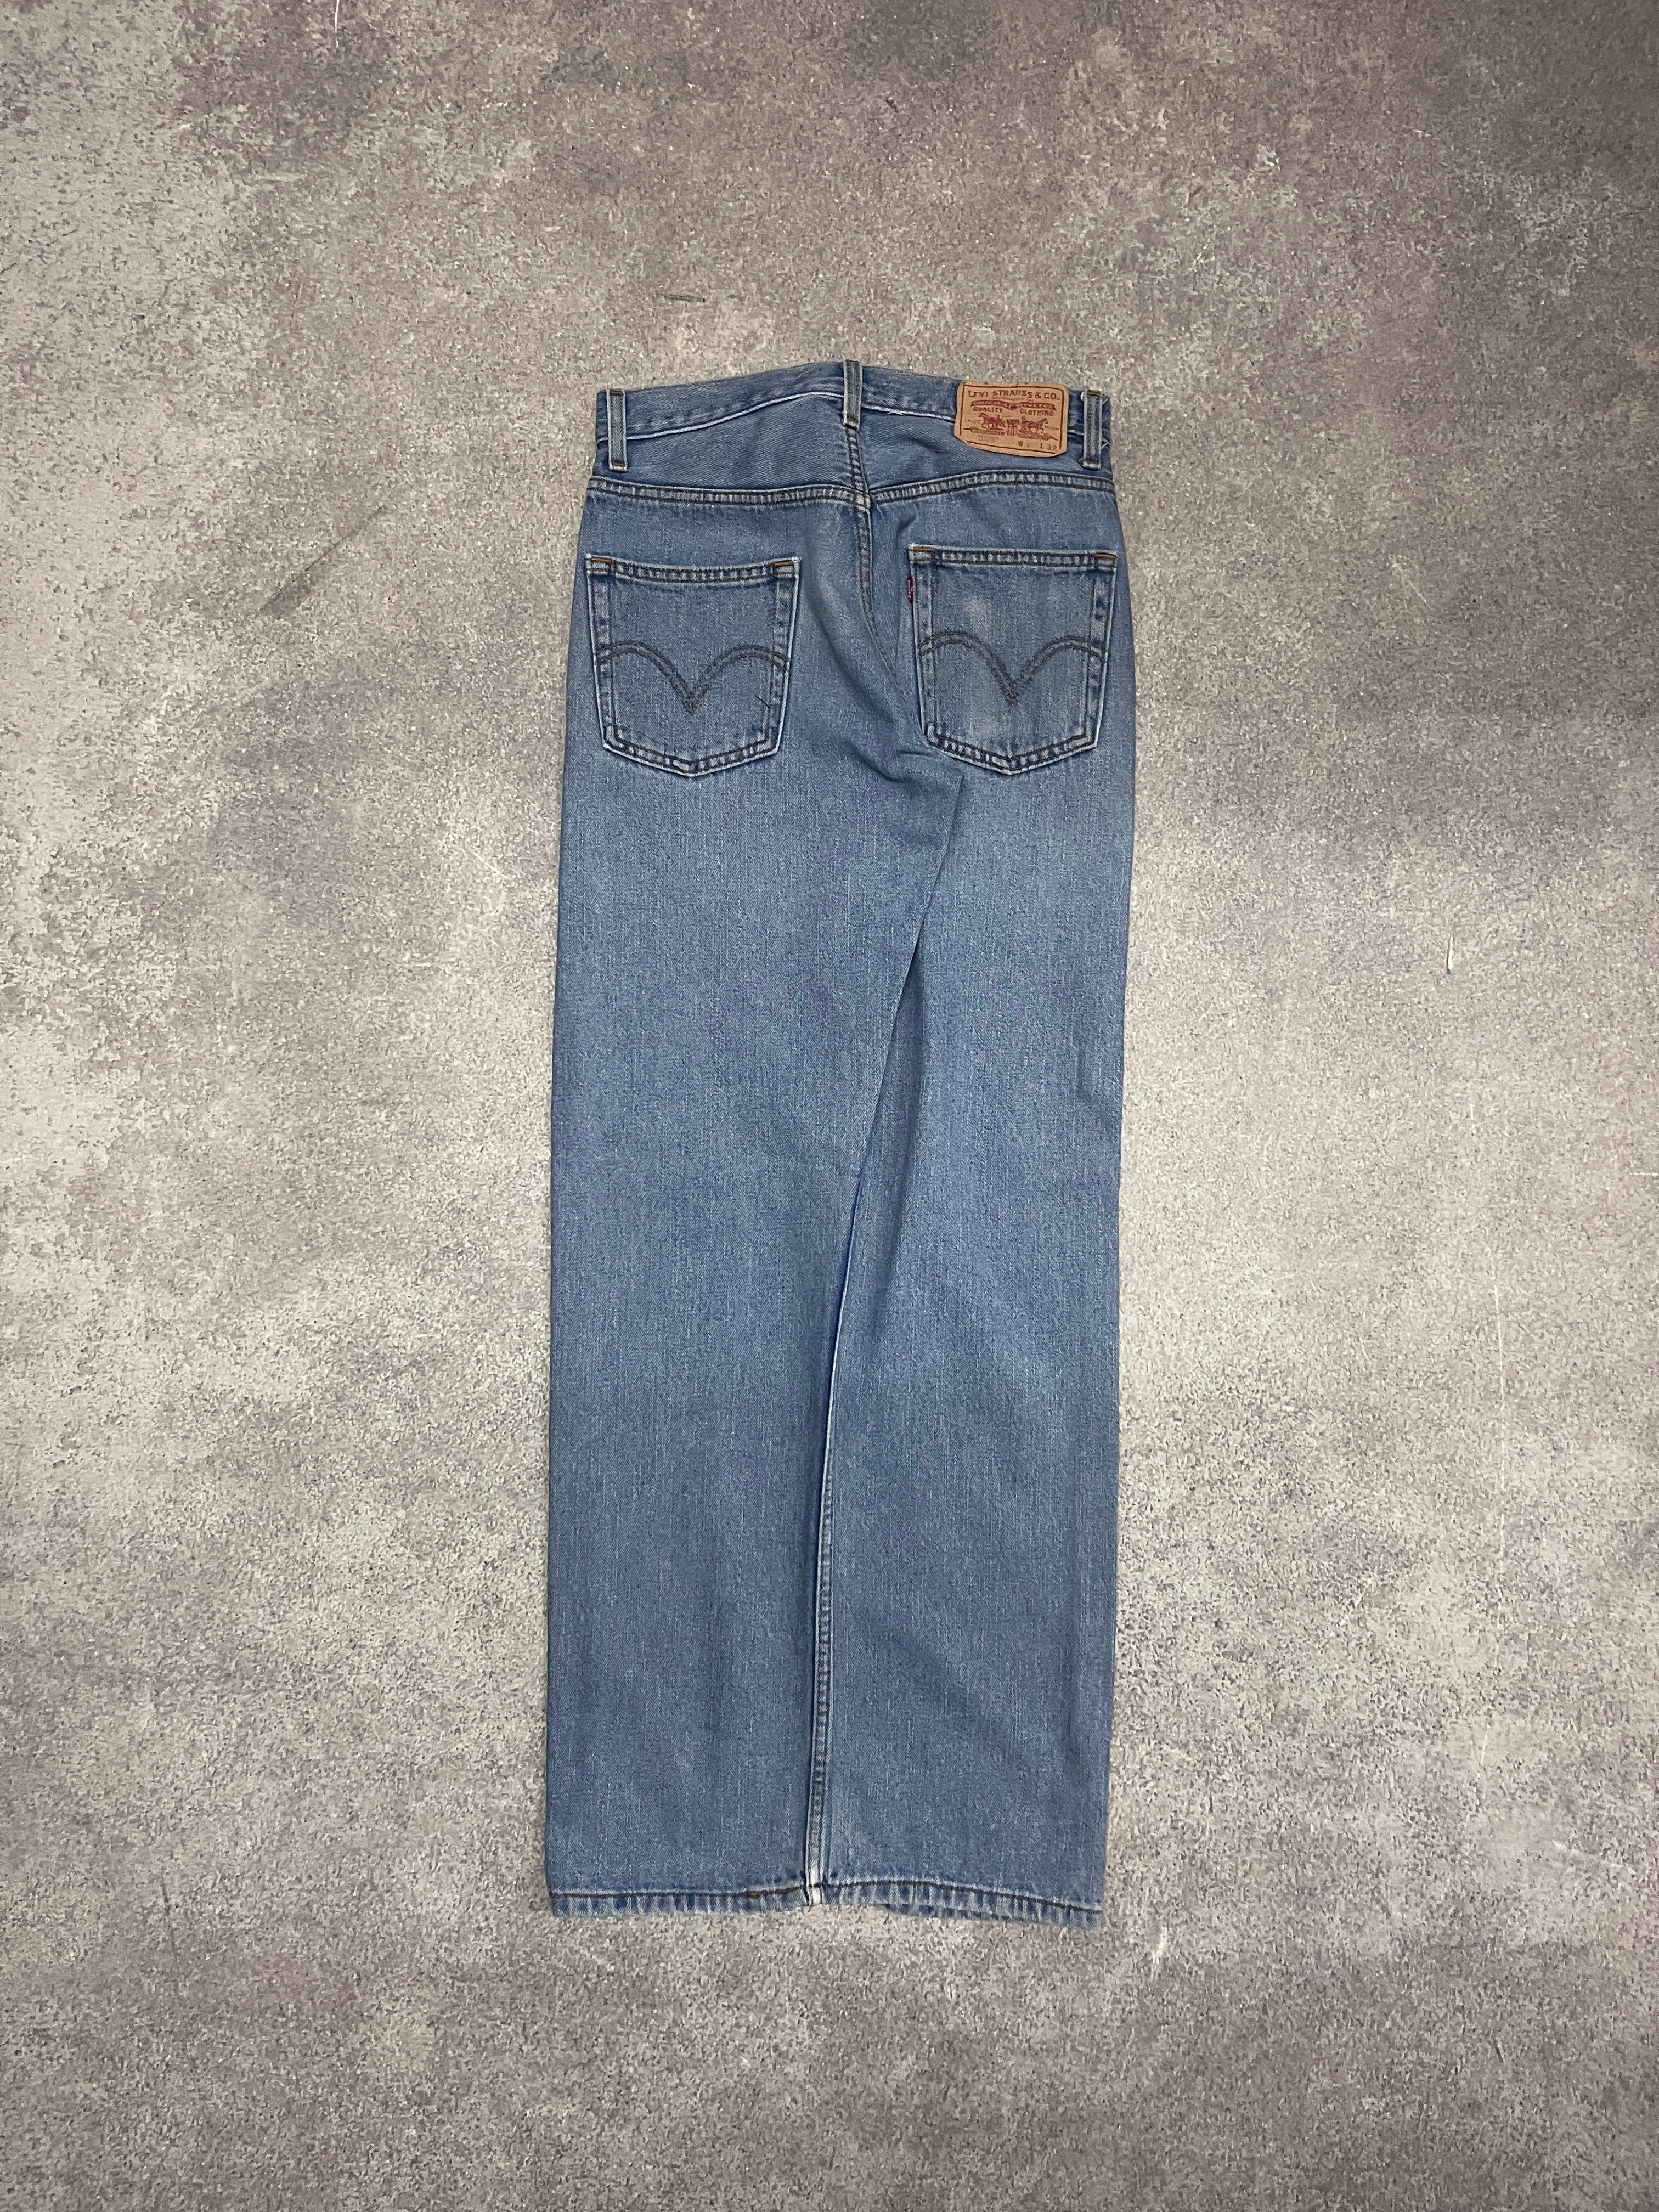 Vintage Levi 505 Denim Jeans Blue // W23 L32 - RHAGHOUSE VINTAGE